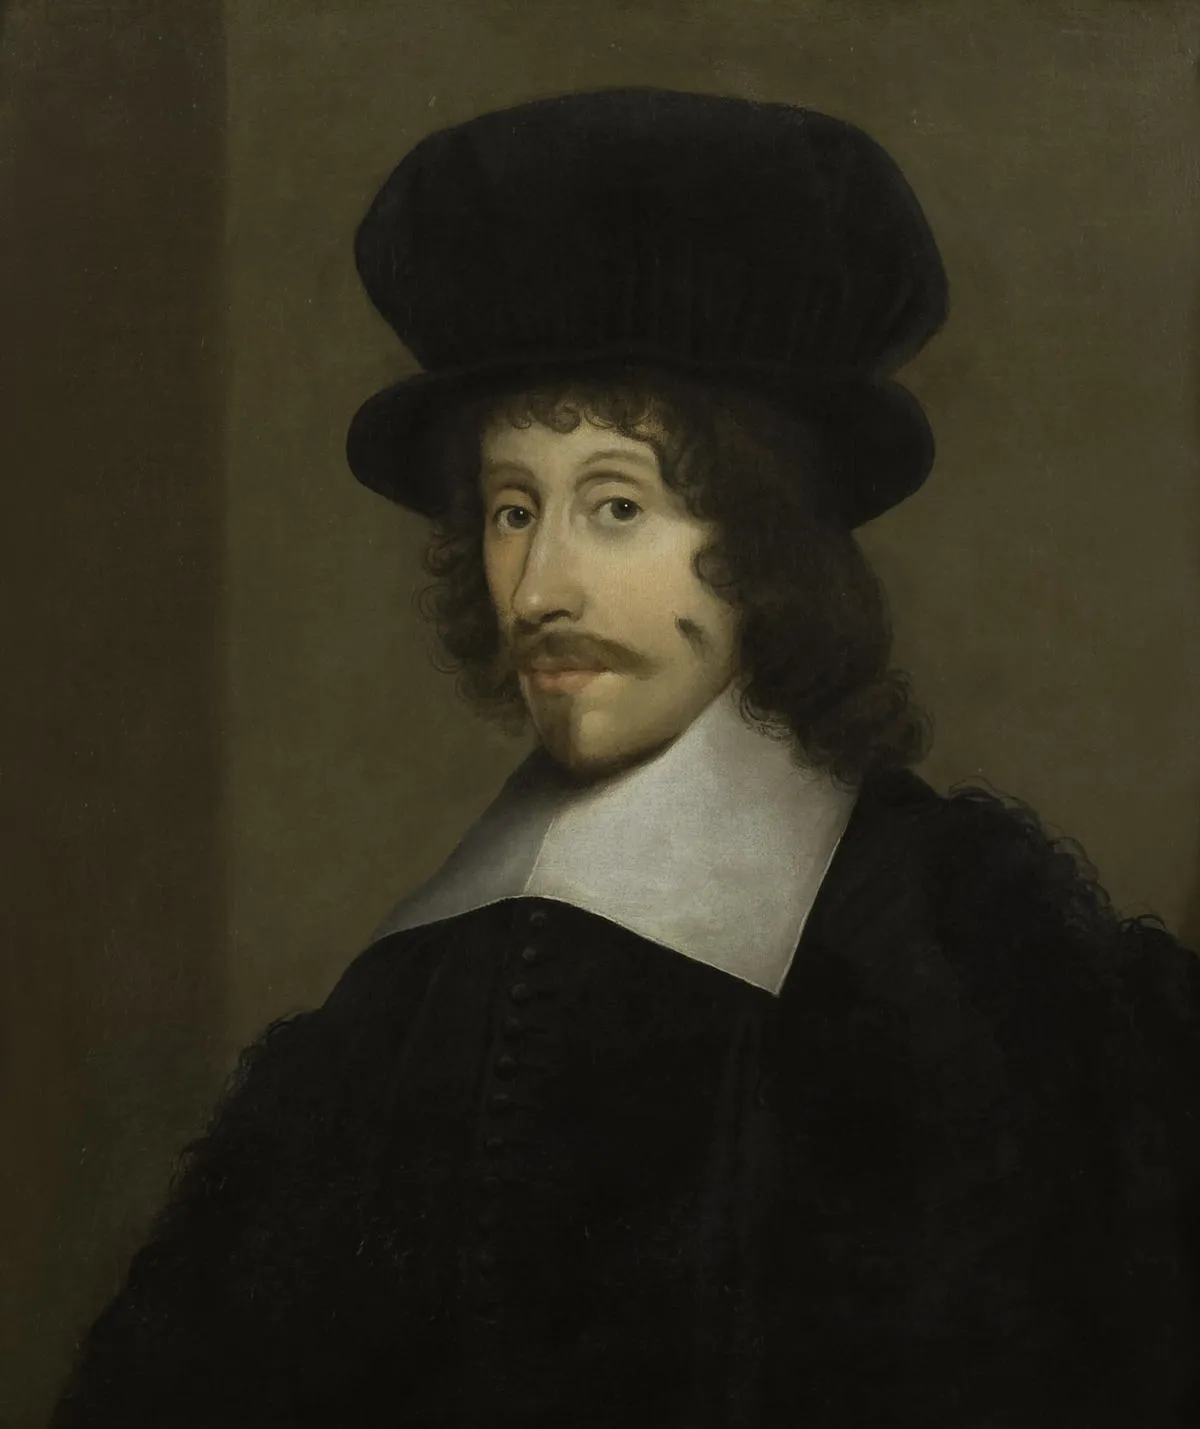 Thomas_Wharton_(1614-1673)